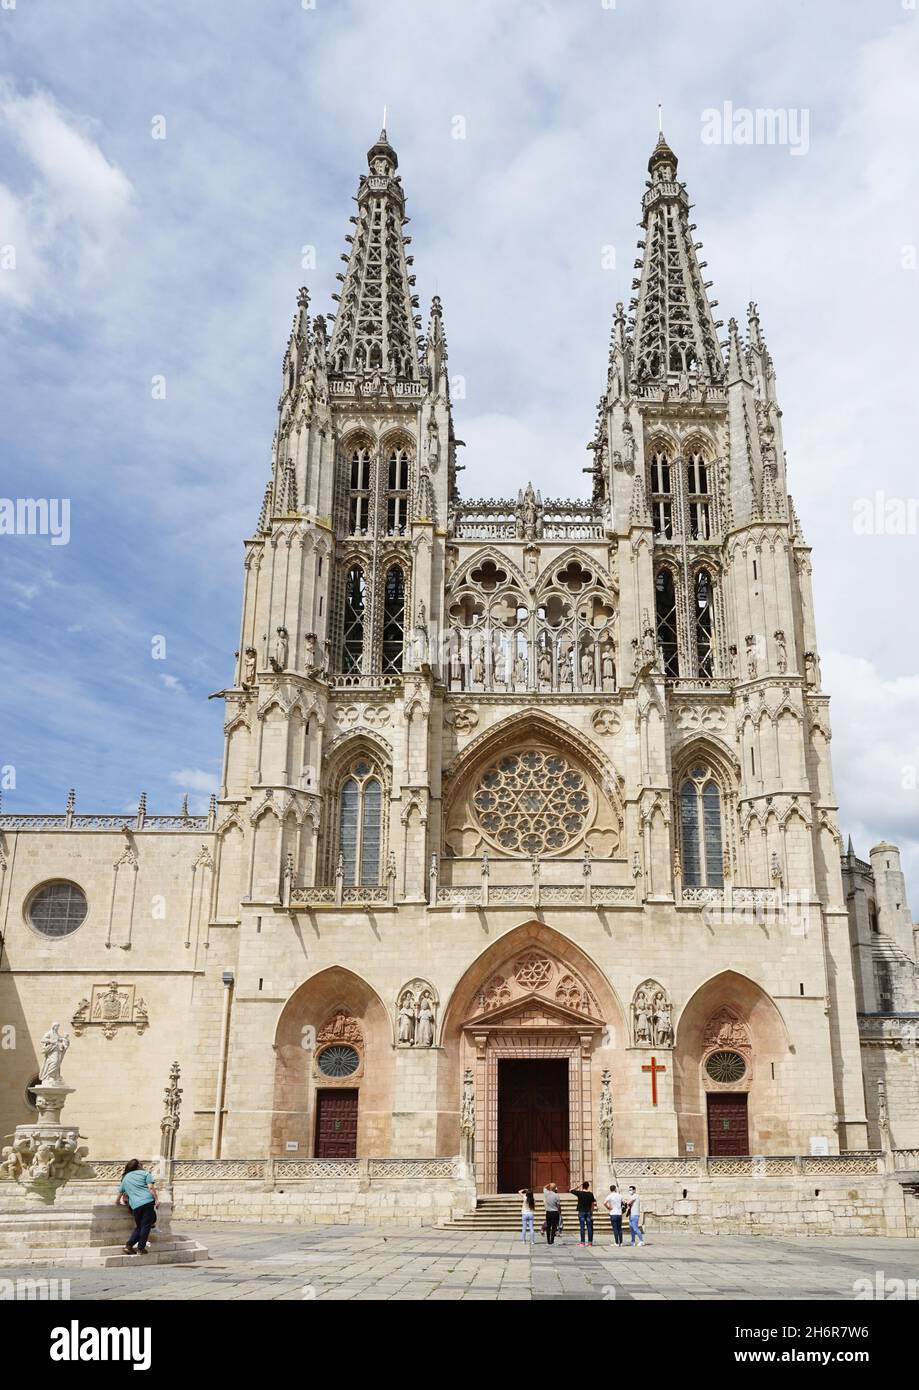 Way of St. James:: Santa Maria, Cathedral of Burgos, main portal Stock Photo